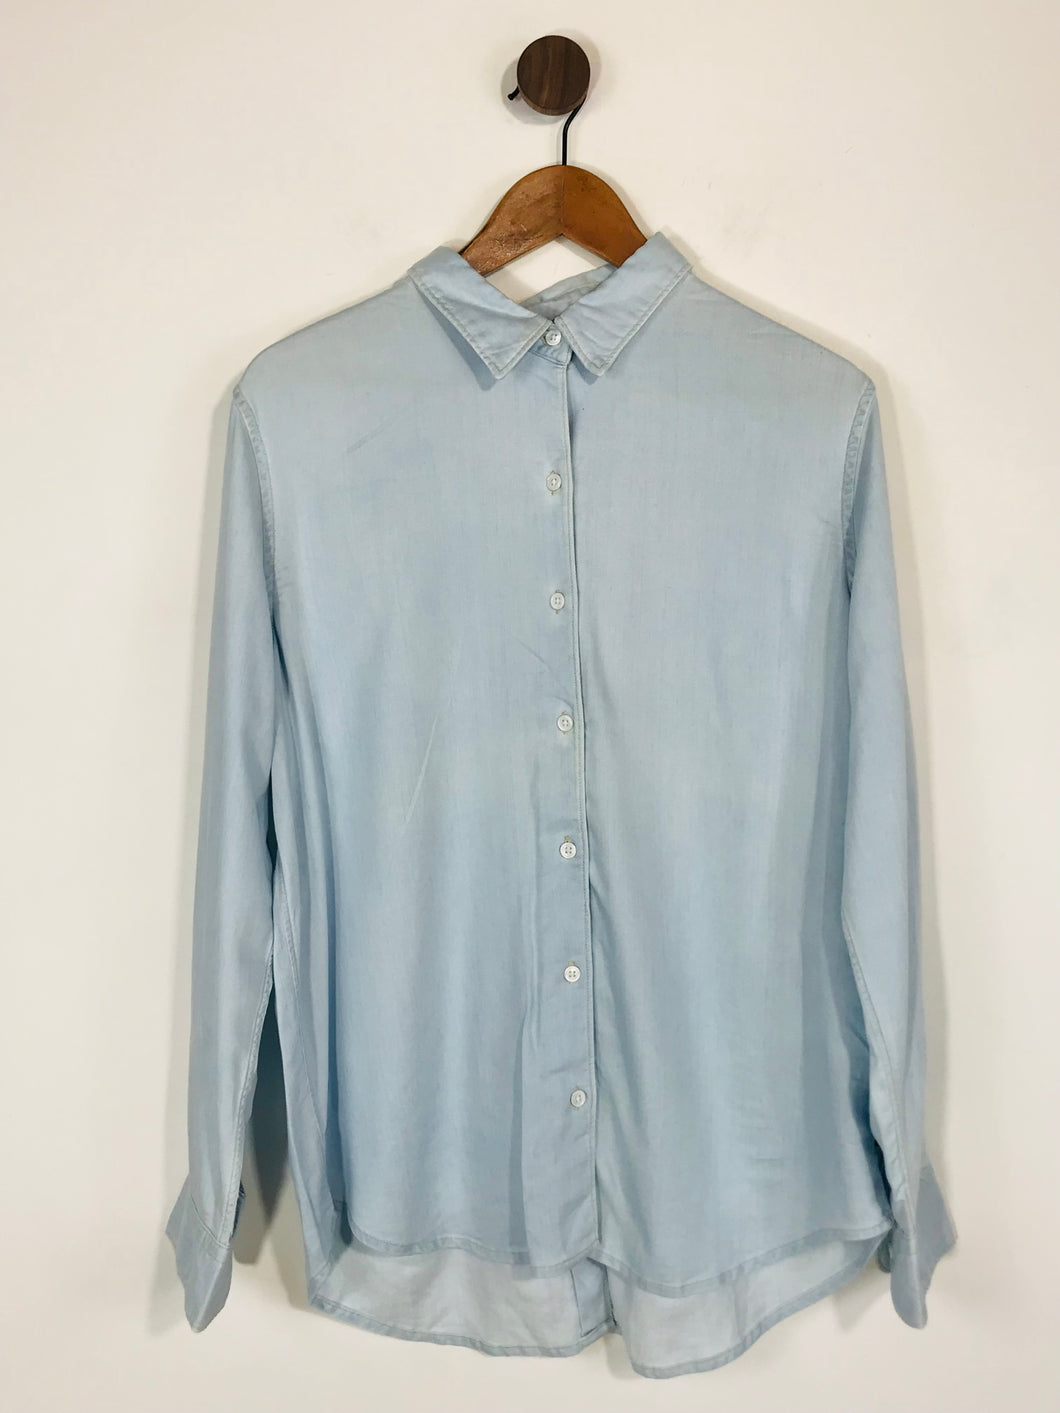 Levi’s Women's Boyfriend Fit Denim Look Button-Up Shirt | L UK14 | Blue